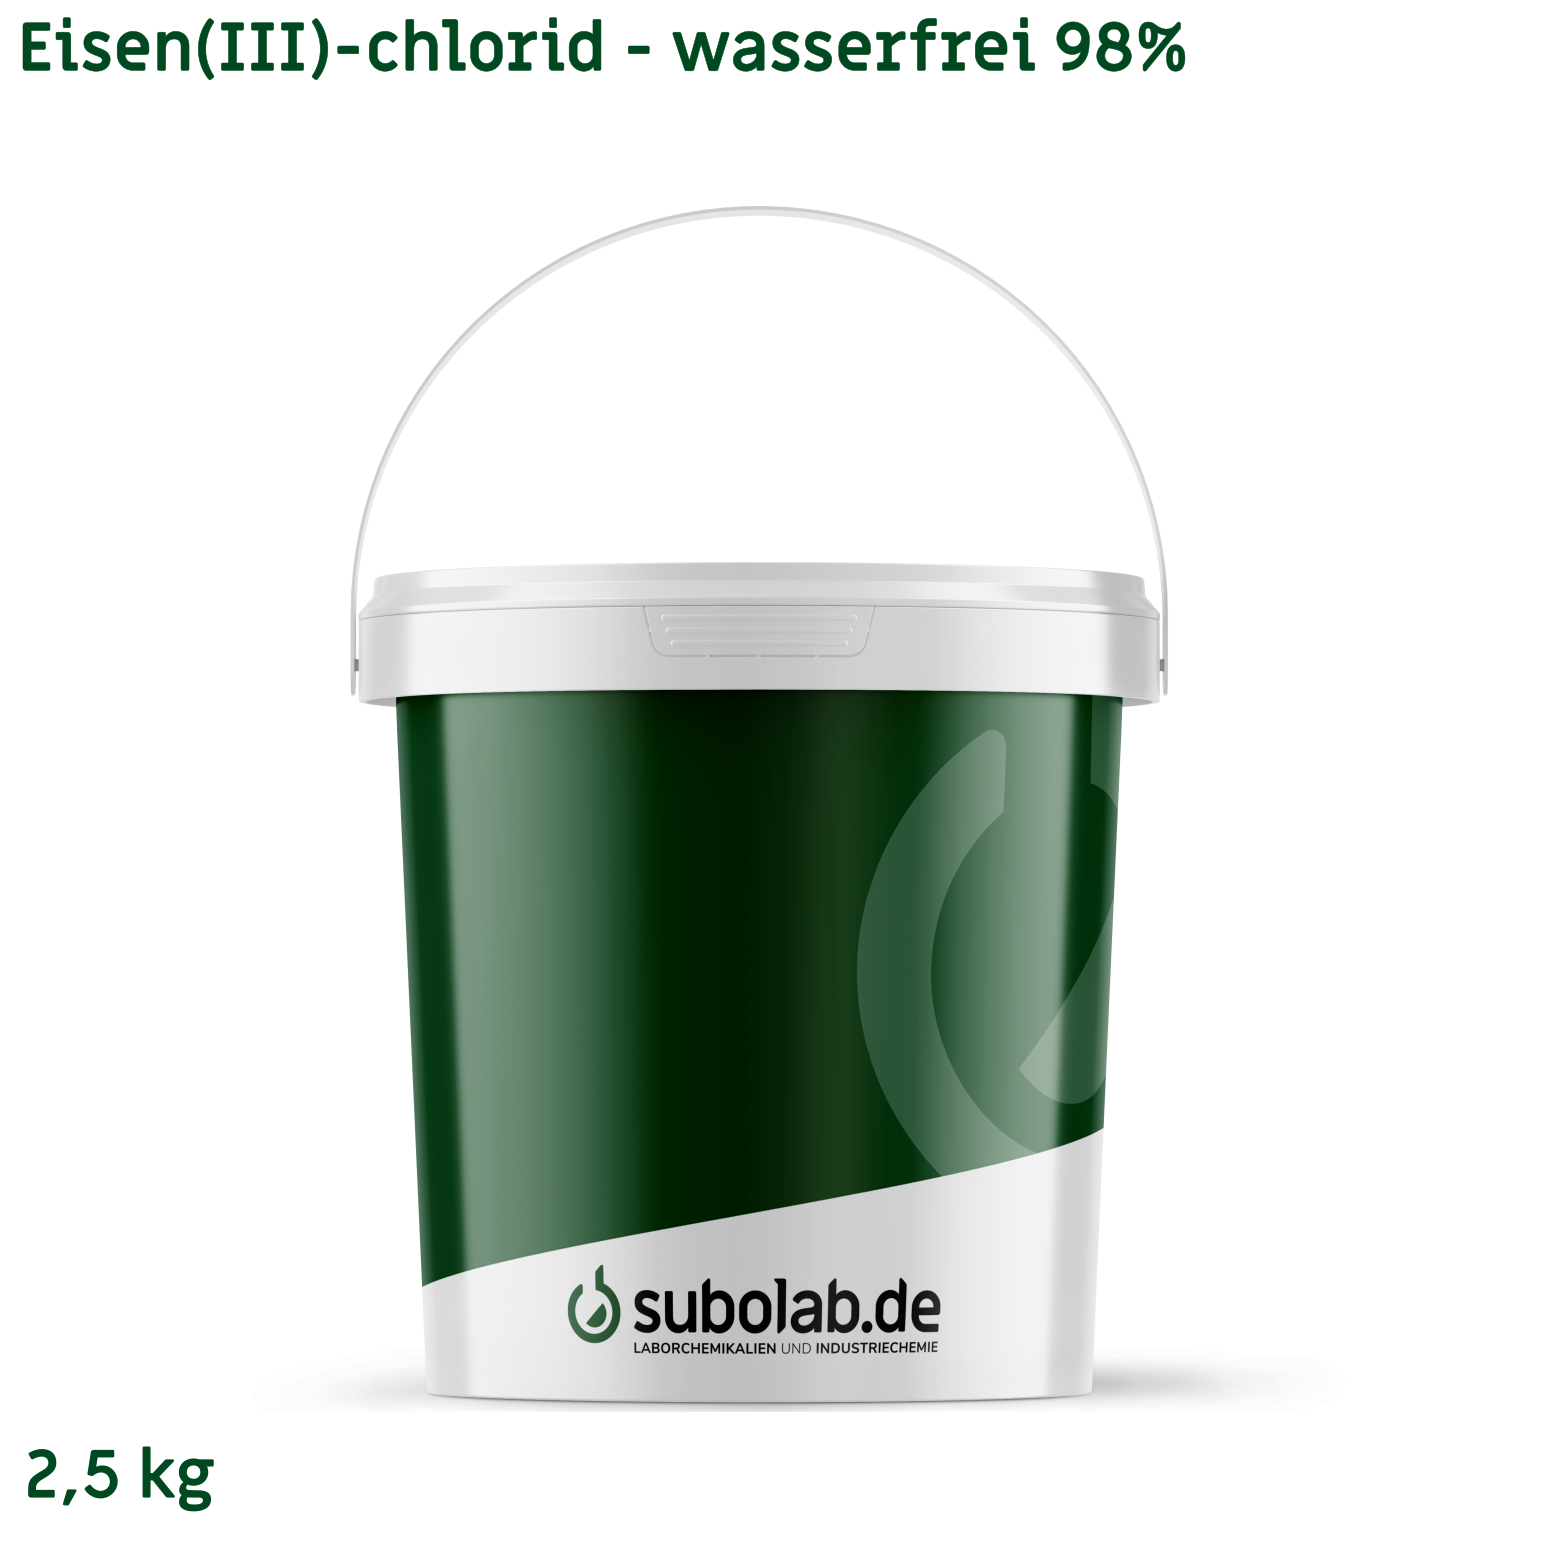 Bild von Eisen(III)-chlorid - wasserfrei 98% (2,5 kg)